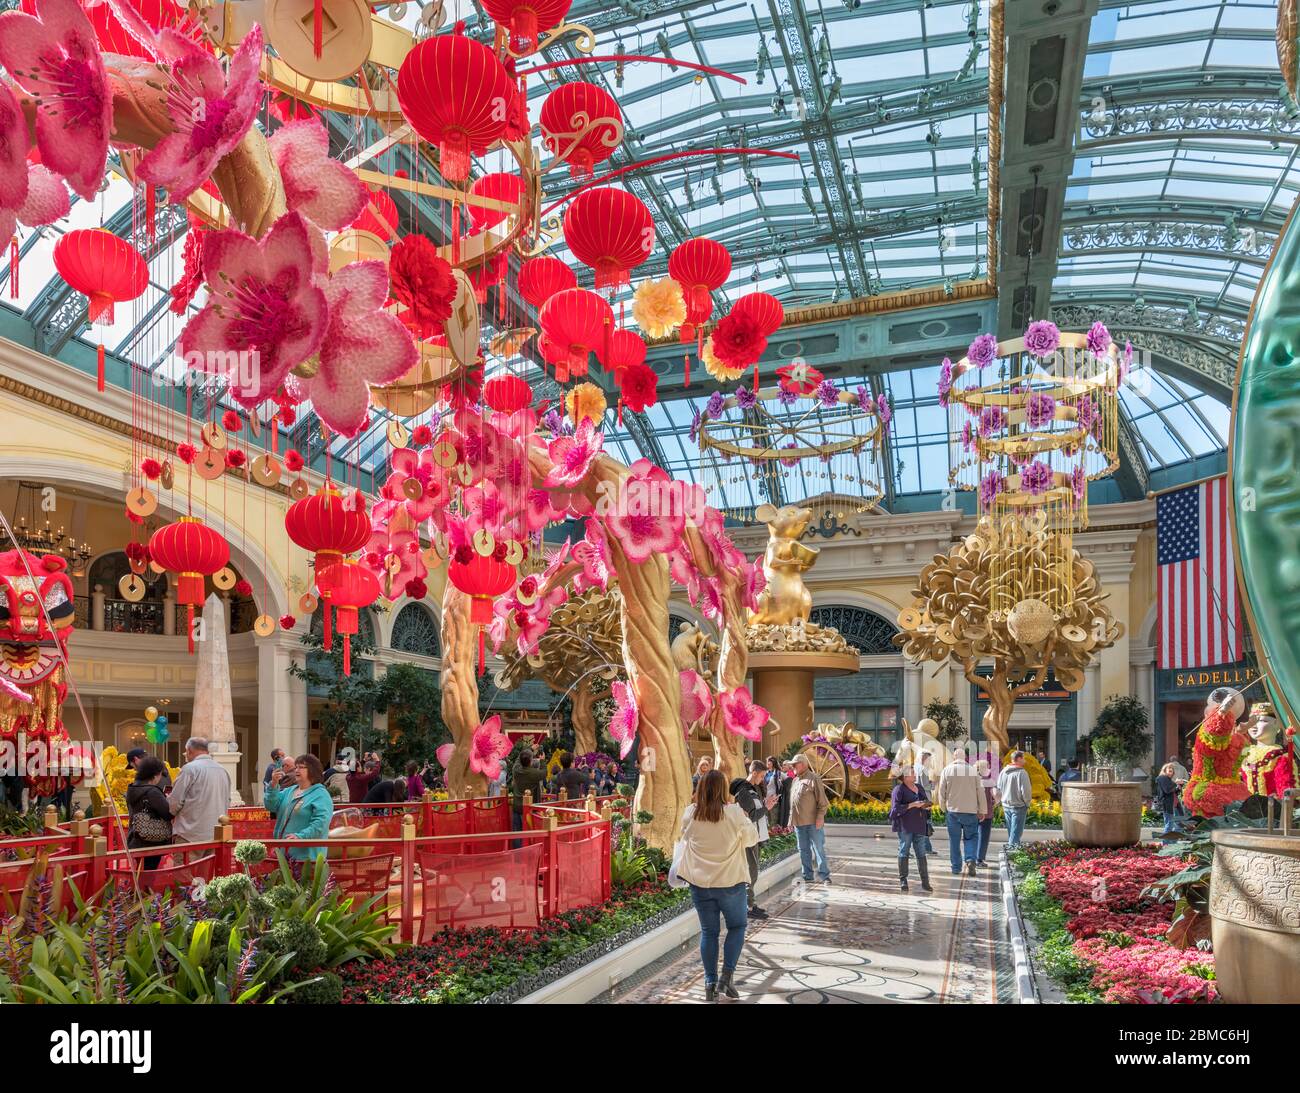 Bellagio Conservatory & Botanical Gardens dekoriert für chinesisches  Neujahr, Bellagio Hotel and Casino, Las Vegas Strip, Las Vegas, Nevada, USA  Stockfotografie - Alamy